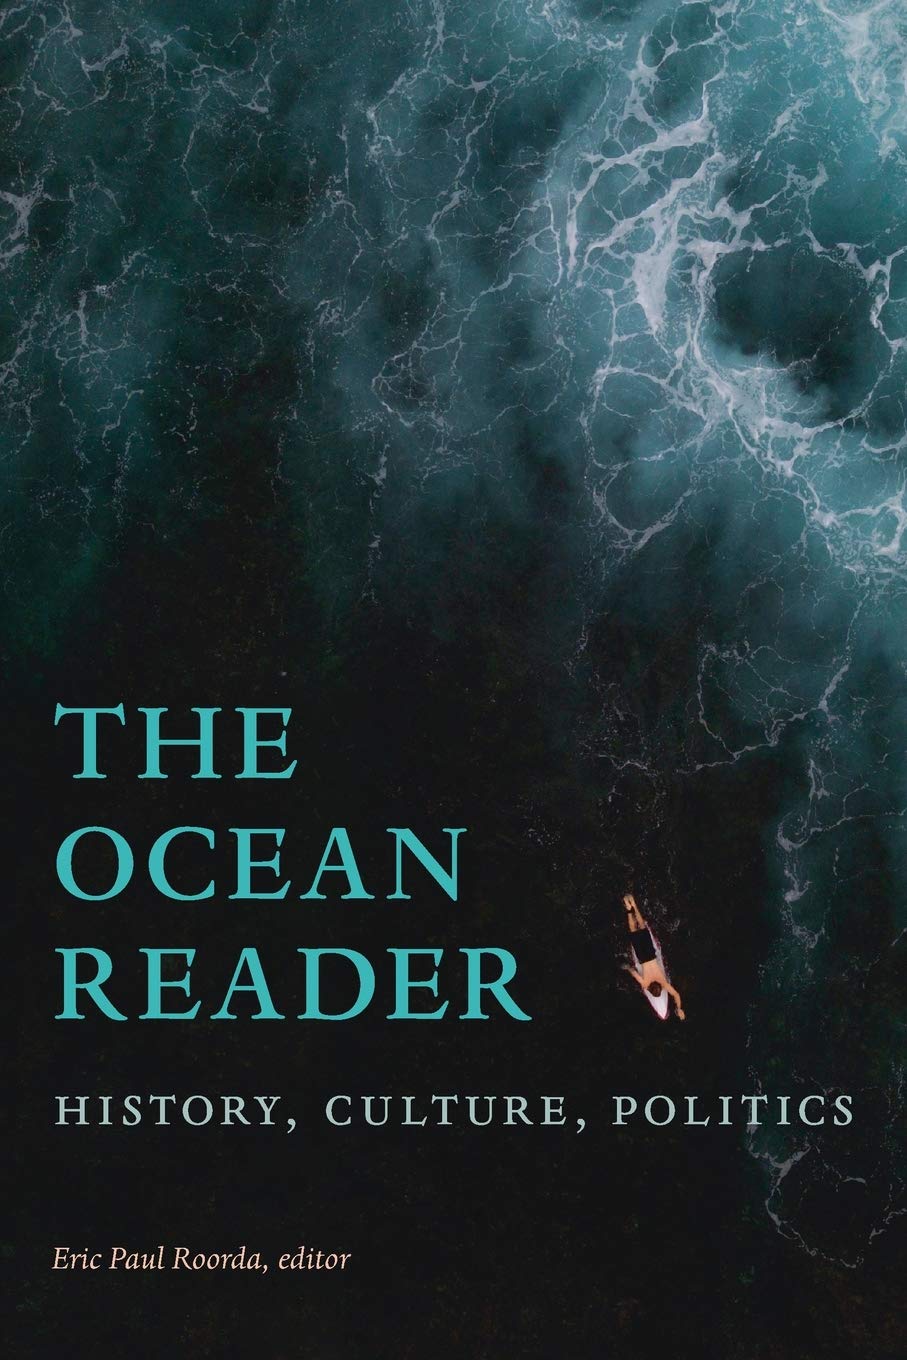 Ocean Reader